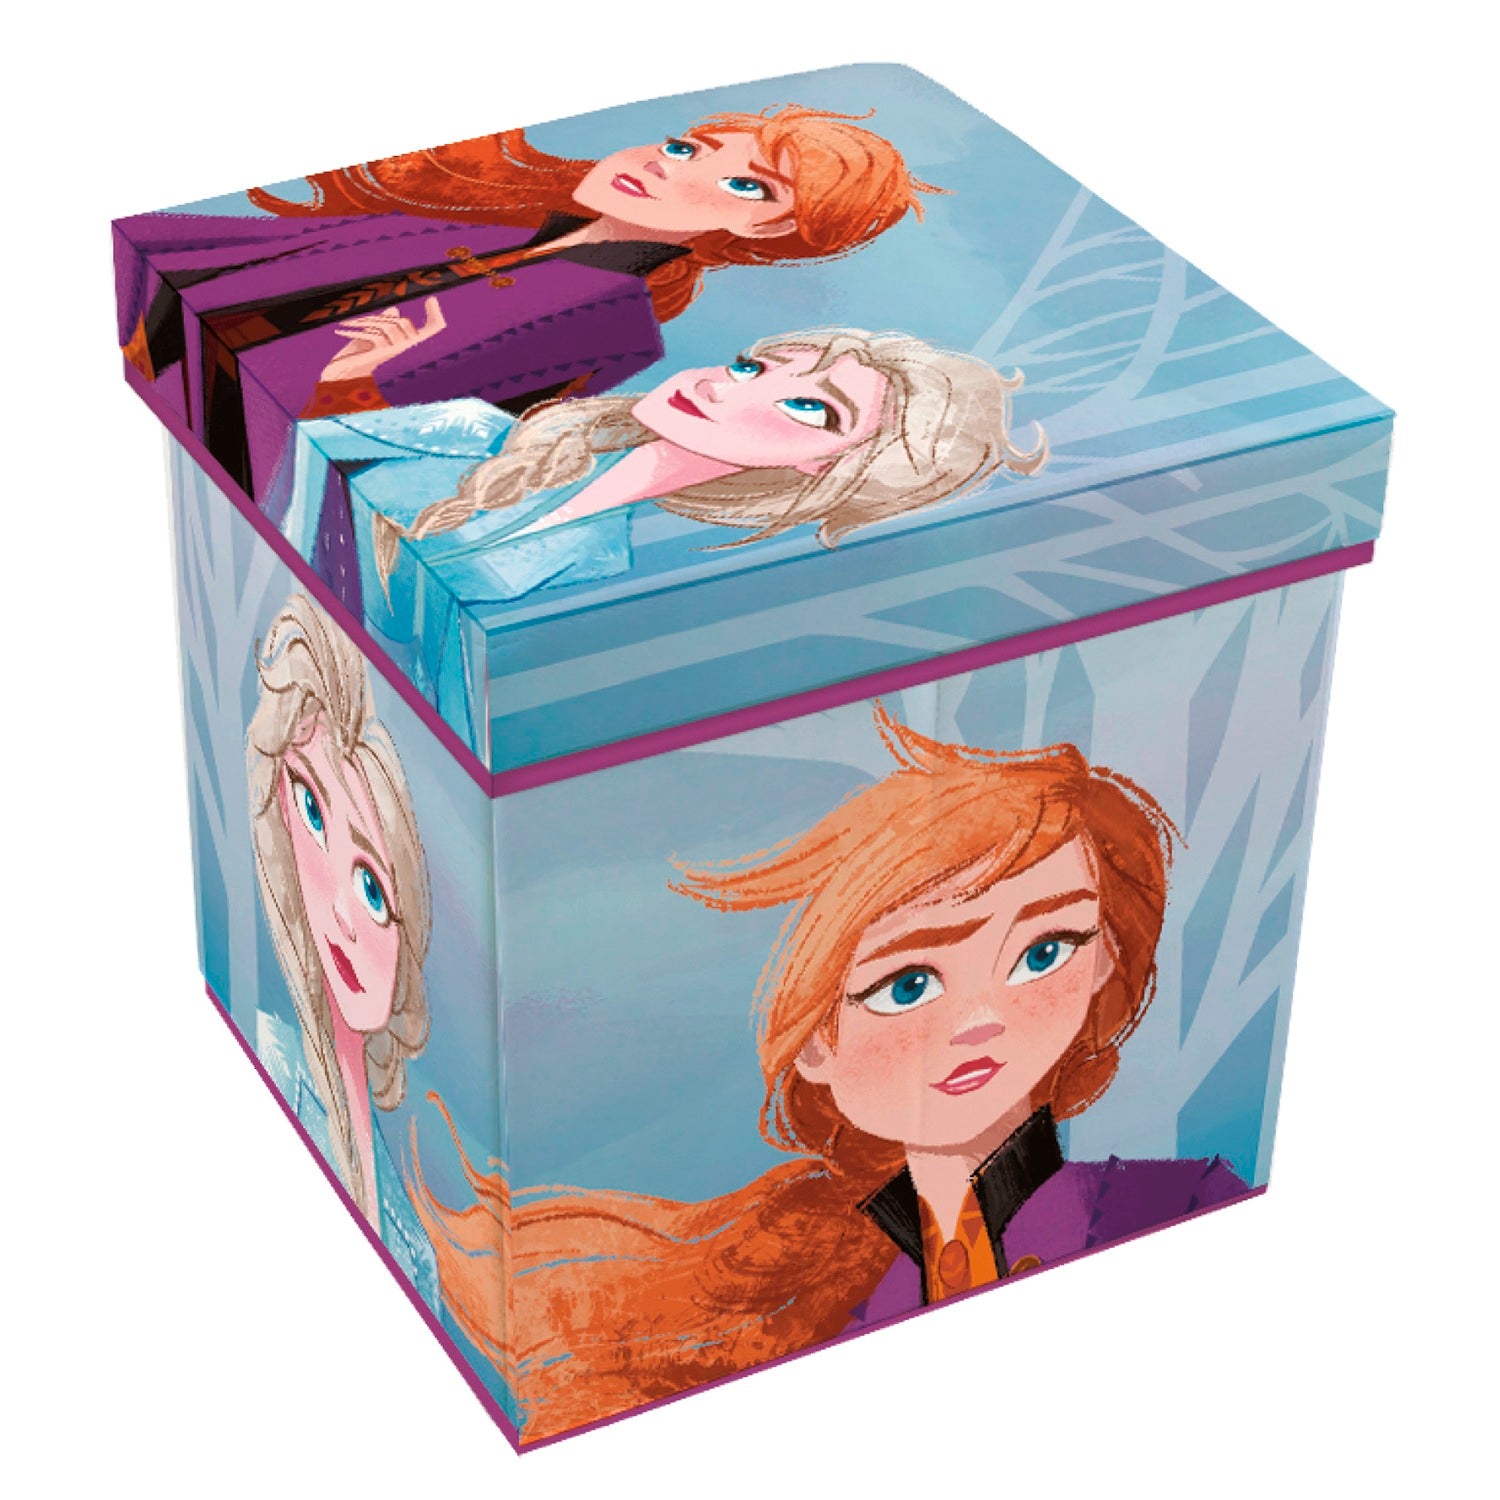 Disney Frozen2 Fabric Storage Bin With Stool